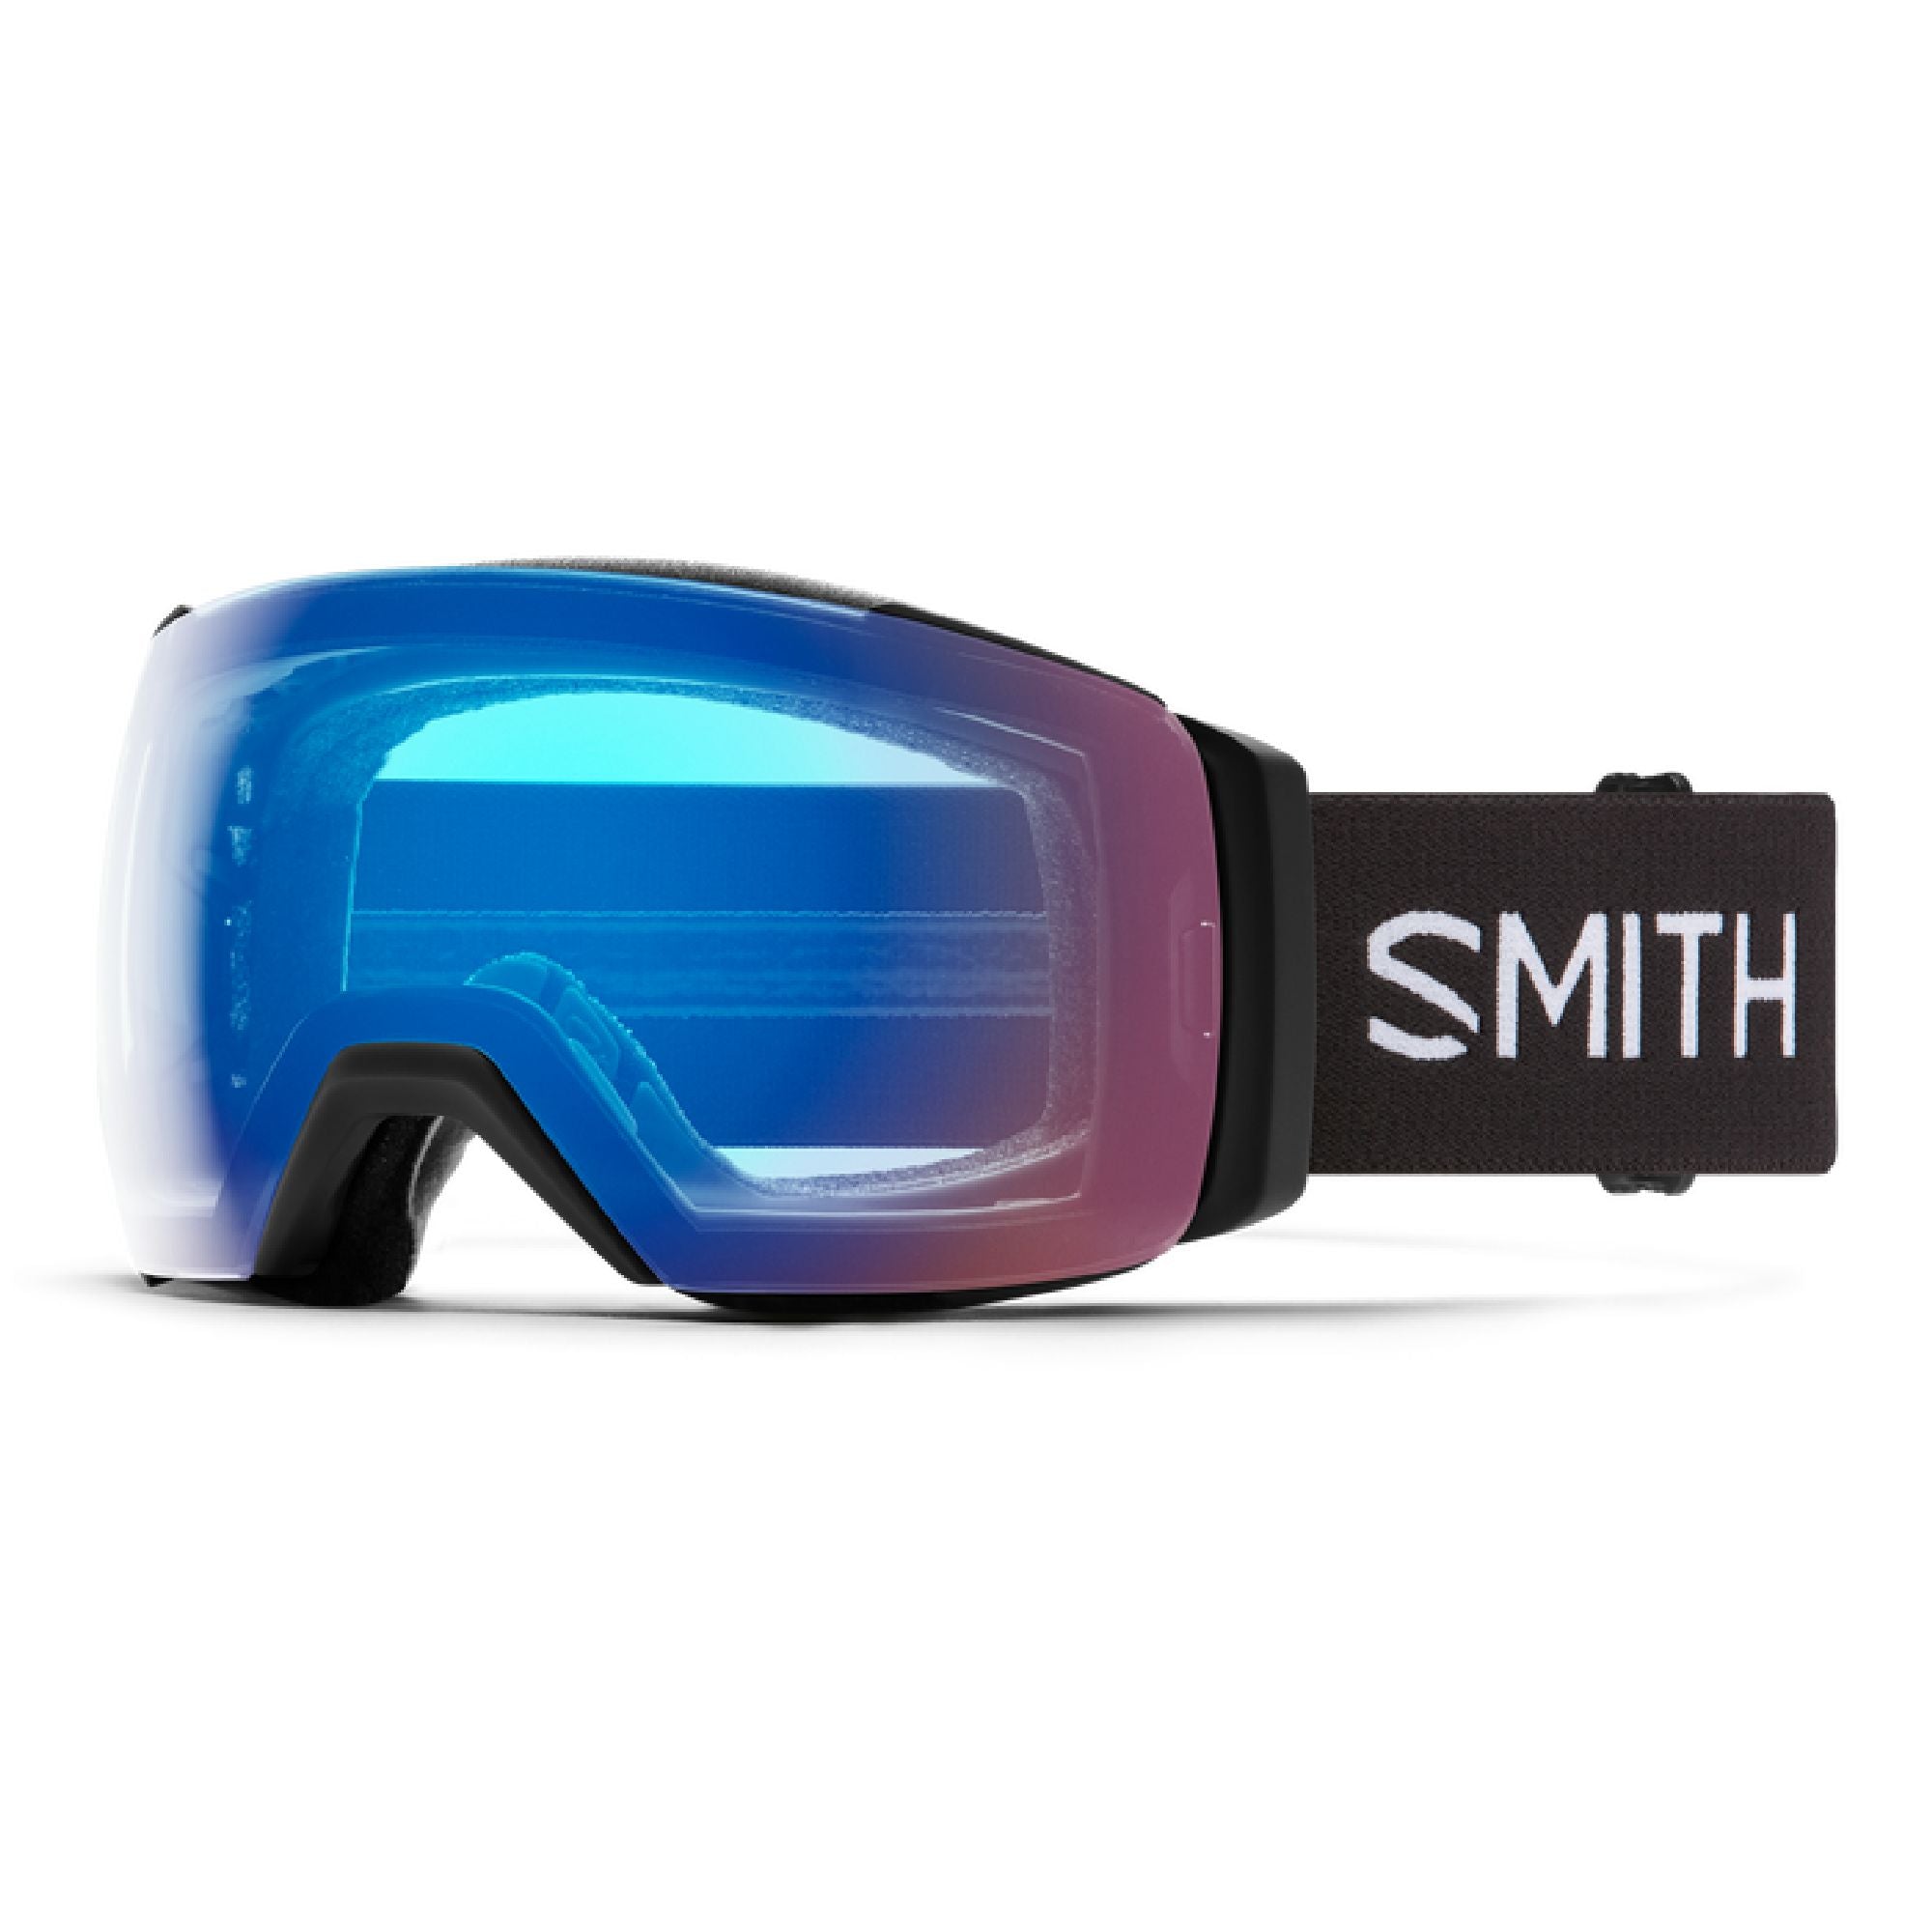 Smith I O MAG - スキー・スノーボードアクセサリー